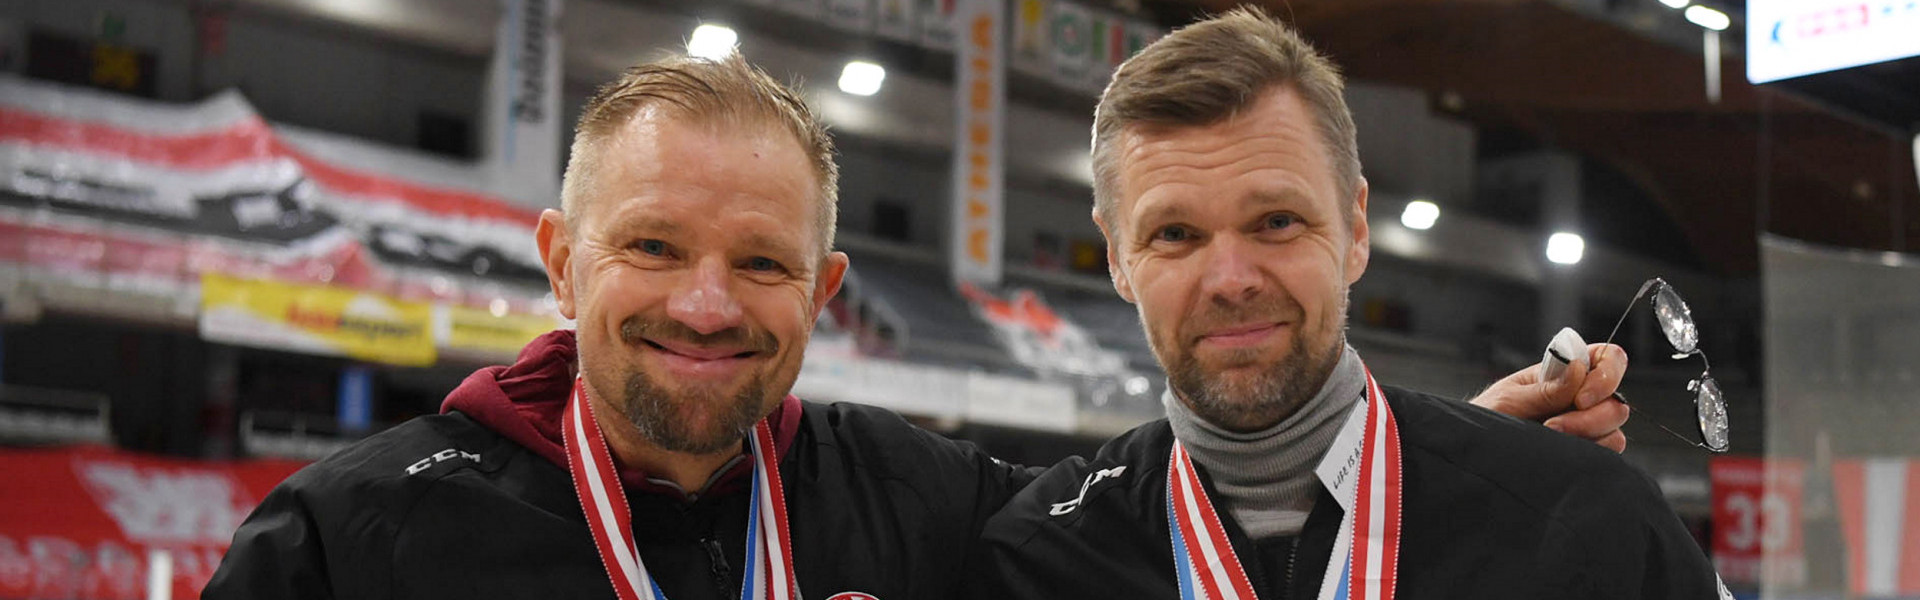 Petri Matikainen und Juha Vuori bleiben auch im kommenden Spieljahr auf der KAC-Kommandobrücke